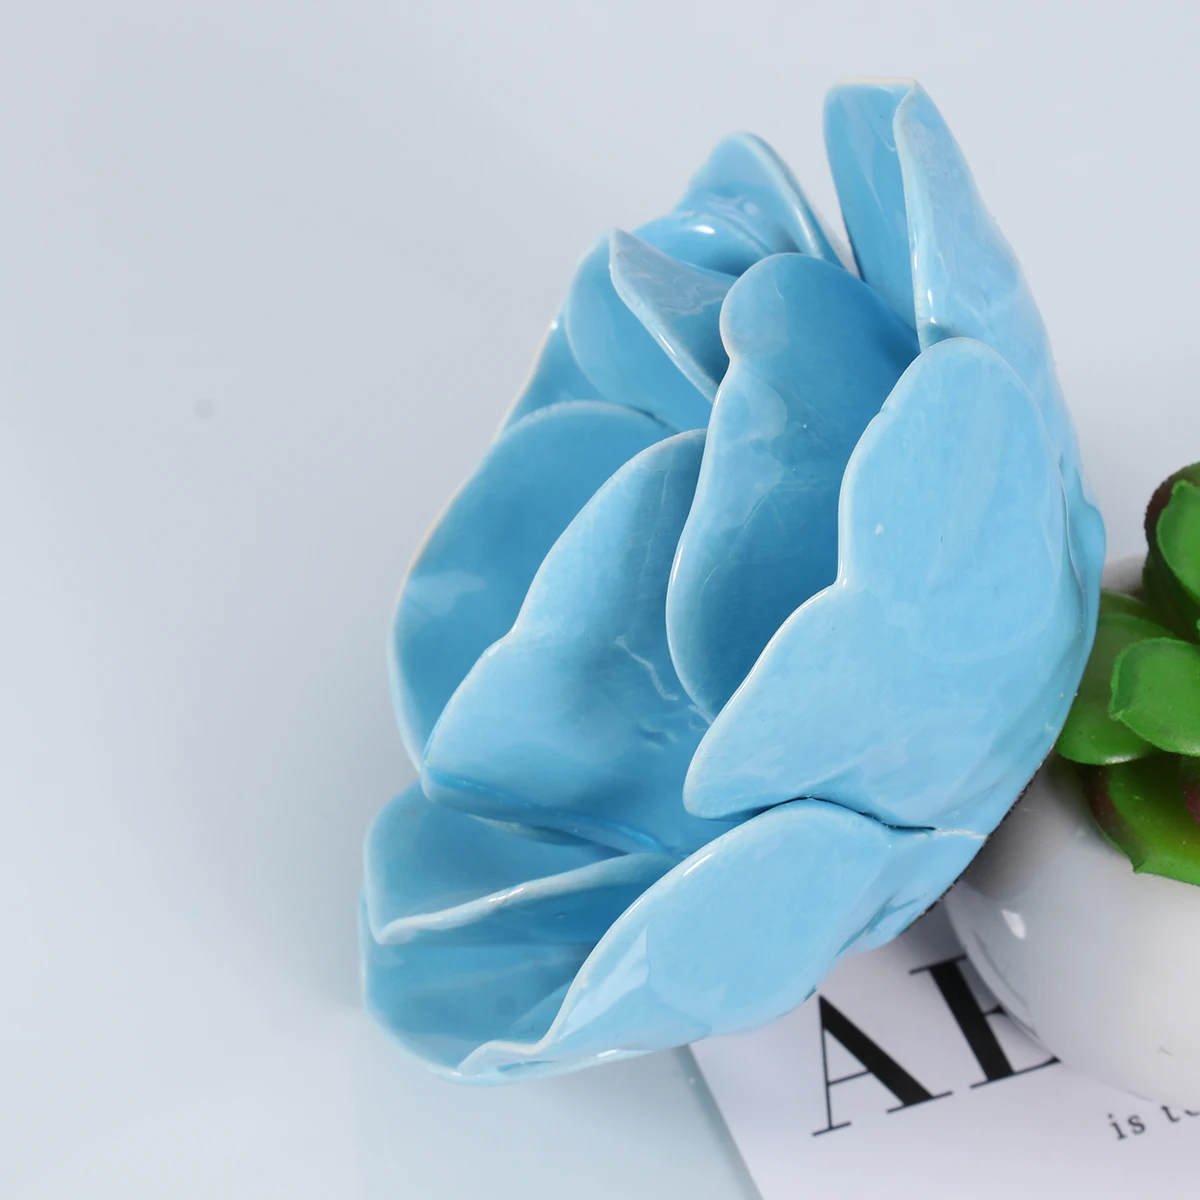 Керамический лепестки лотоса стиль подсвечник в форме цветка чайные светильники держатель дома и стола наружное декорирование